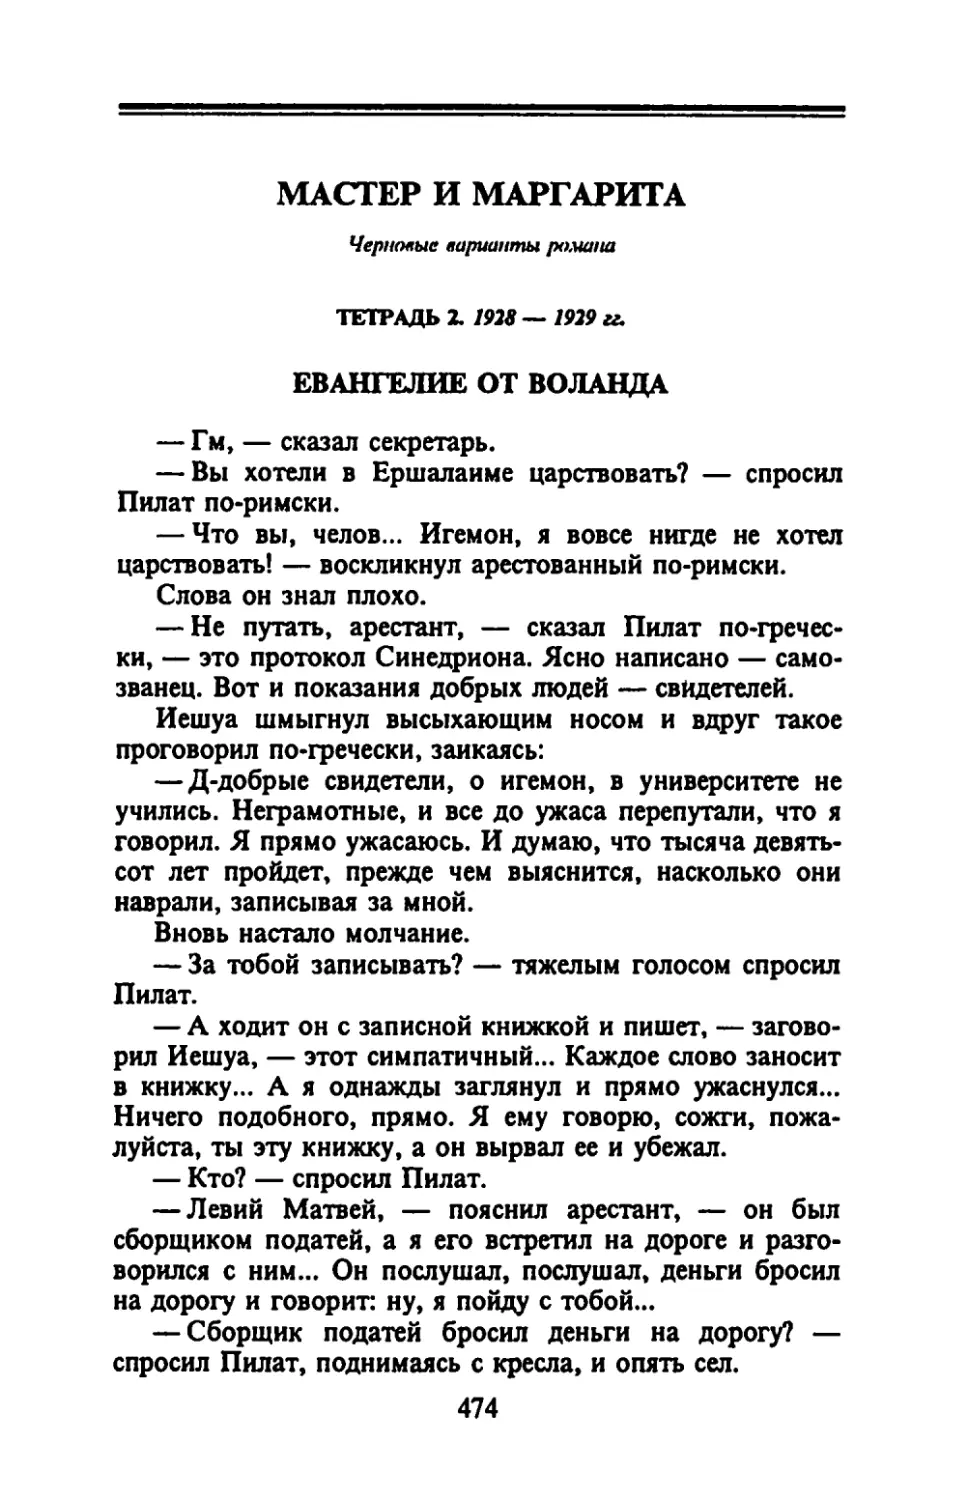 Тетрадь 2. 1928 - 1929 гг.